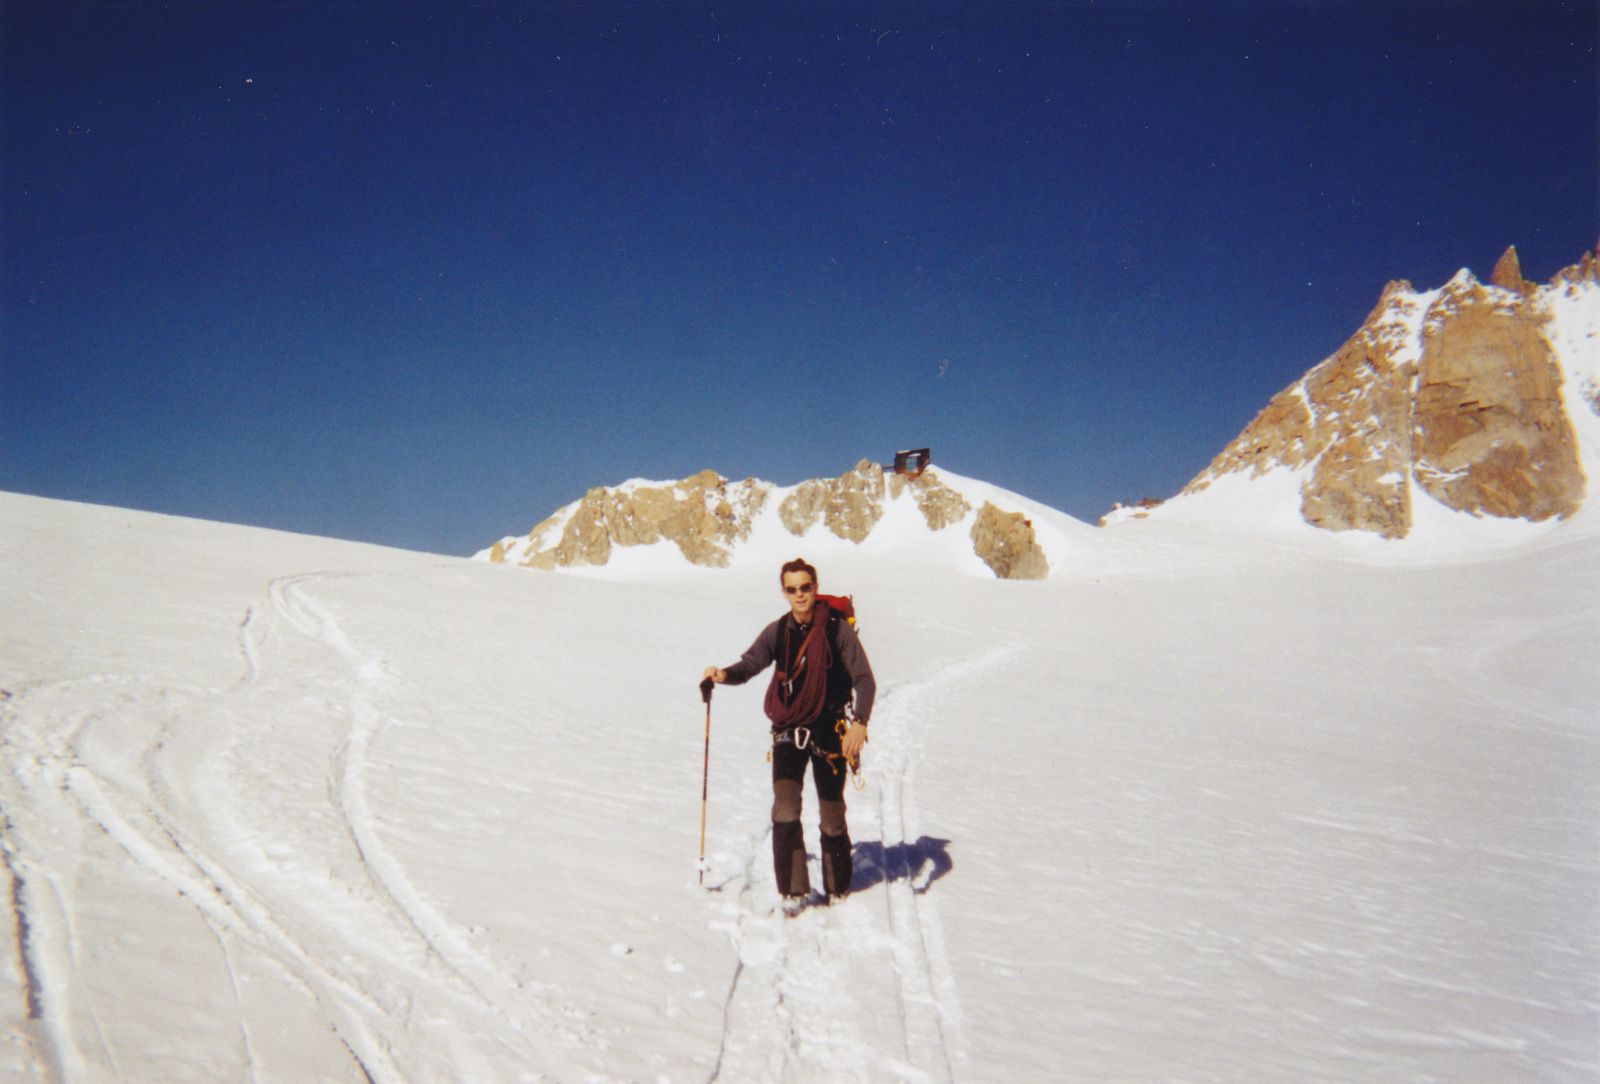 Mont-Blanc du Tacul: Goulotte Lafaille